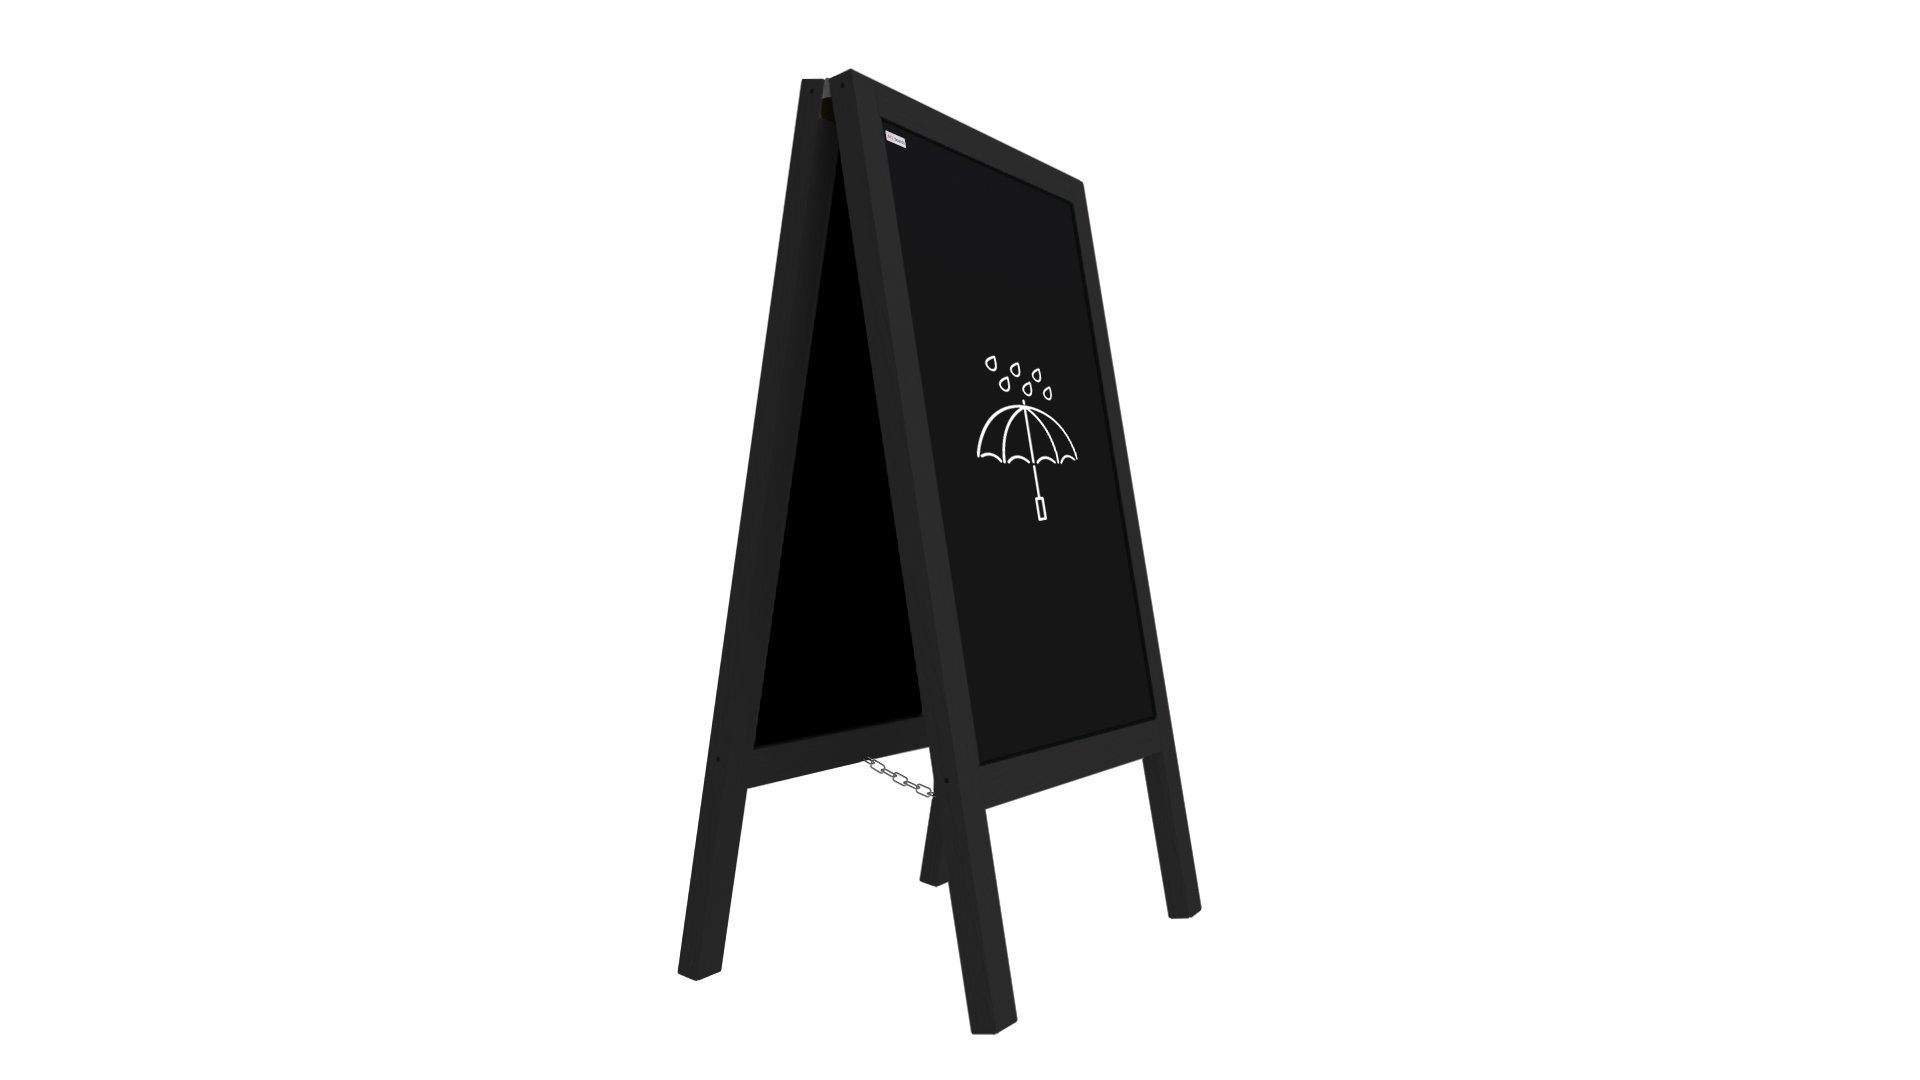 ALLboards Standtafel ALLboards Kundenstopper mit lackiertem Holzrahmen Werbetafel